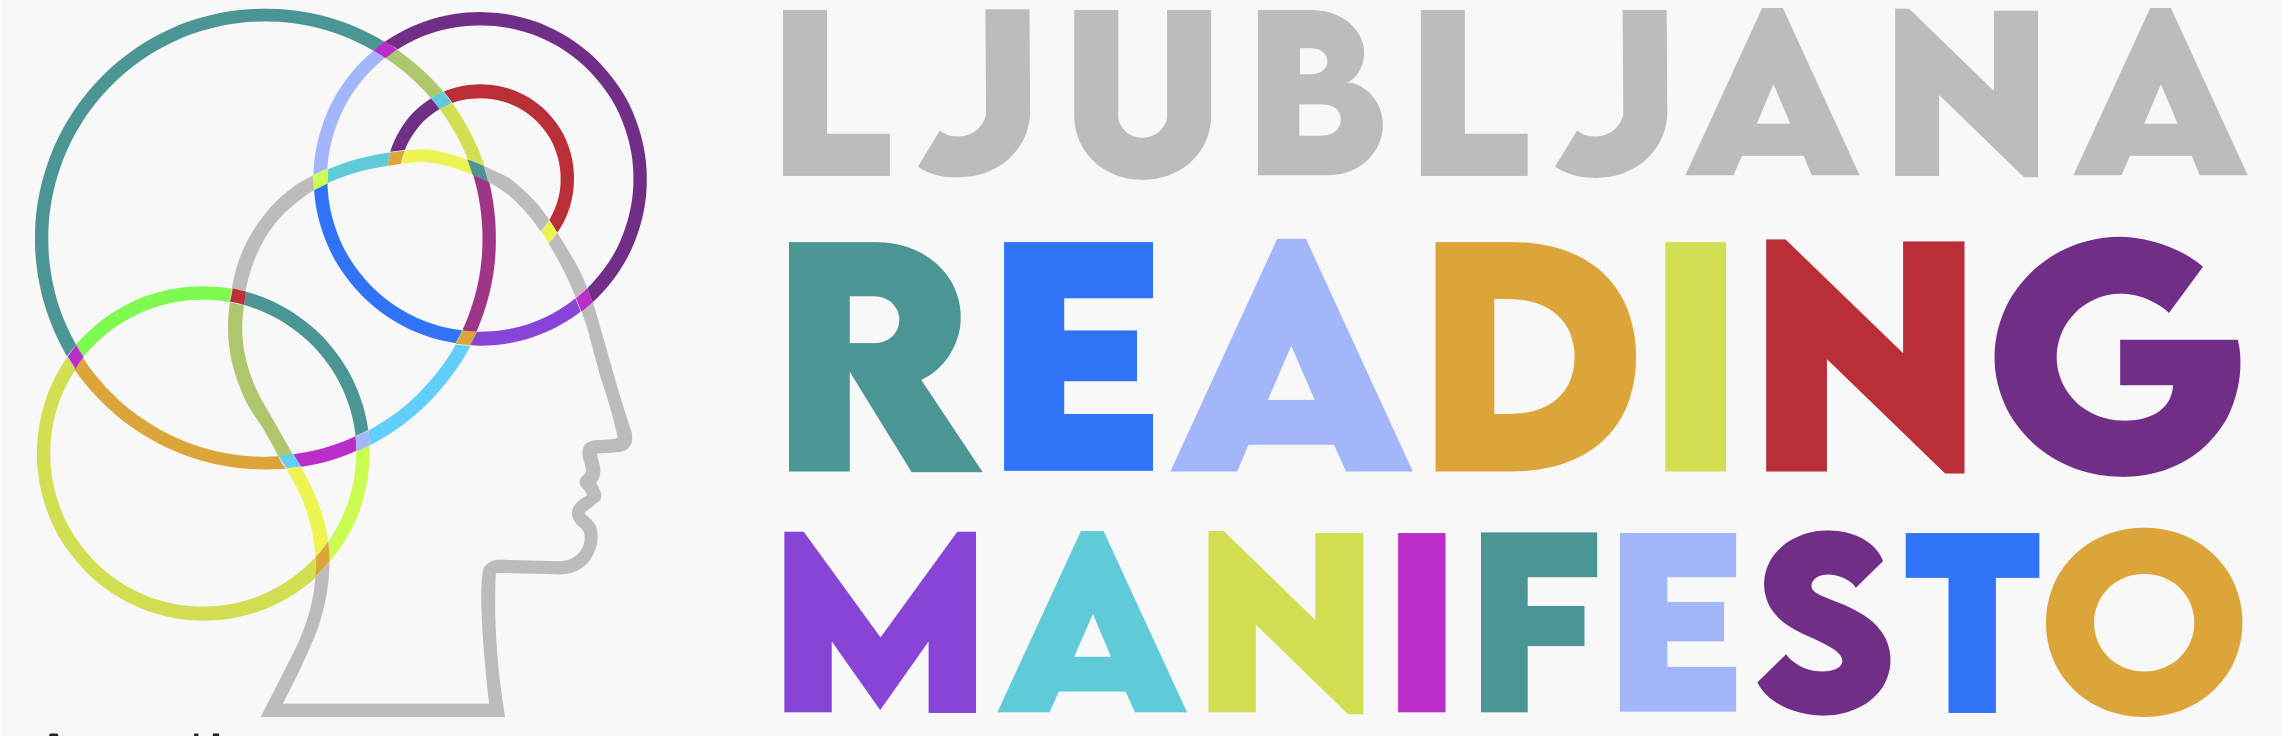 Ljubljana-Manifest: Bücherlesen als wichtige Kulturtechnik erhalten